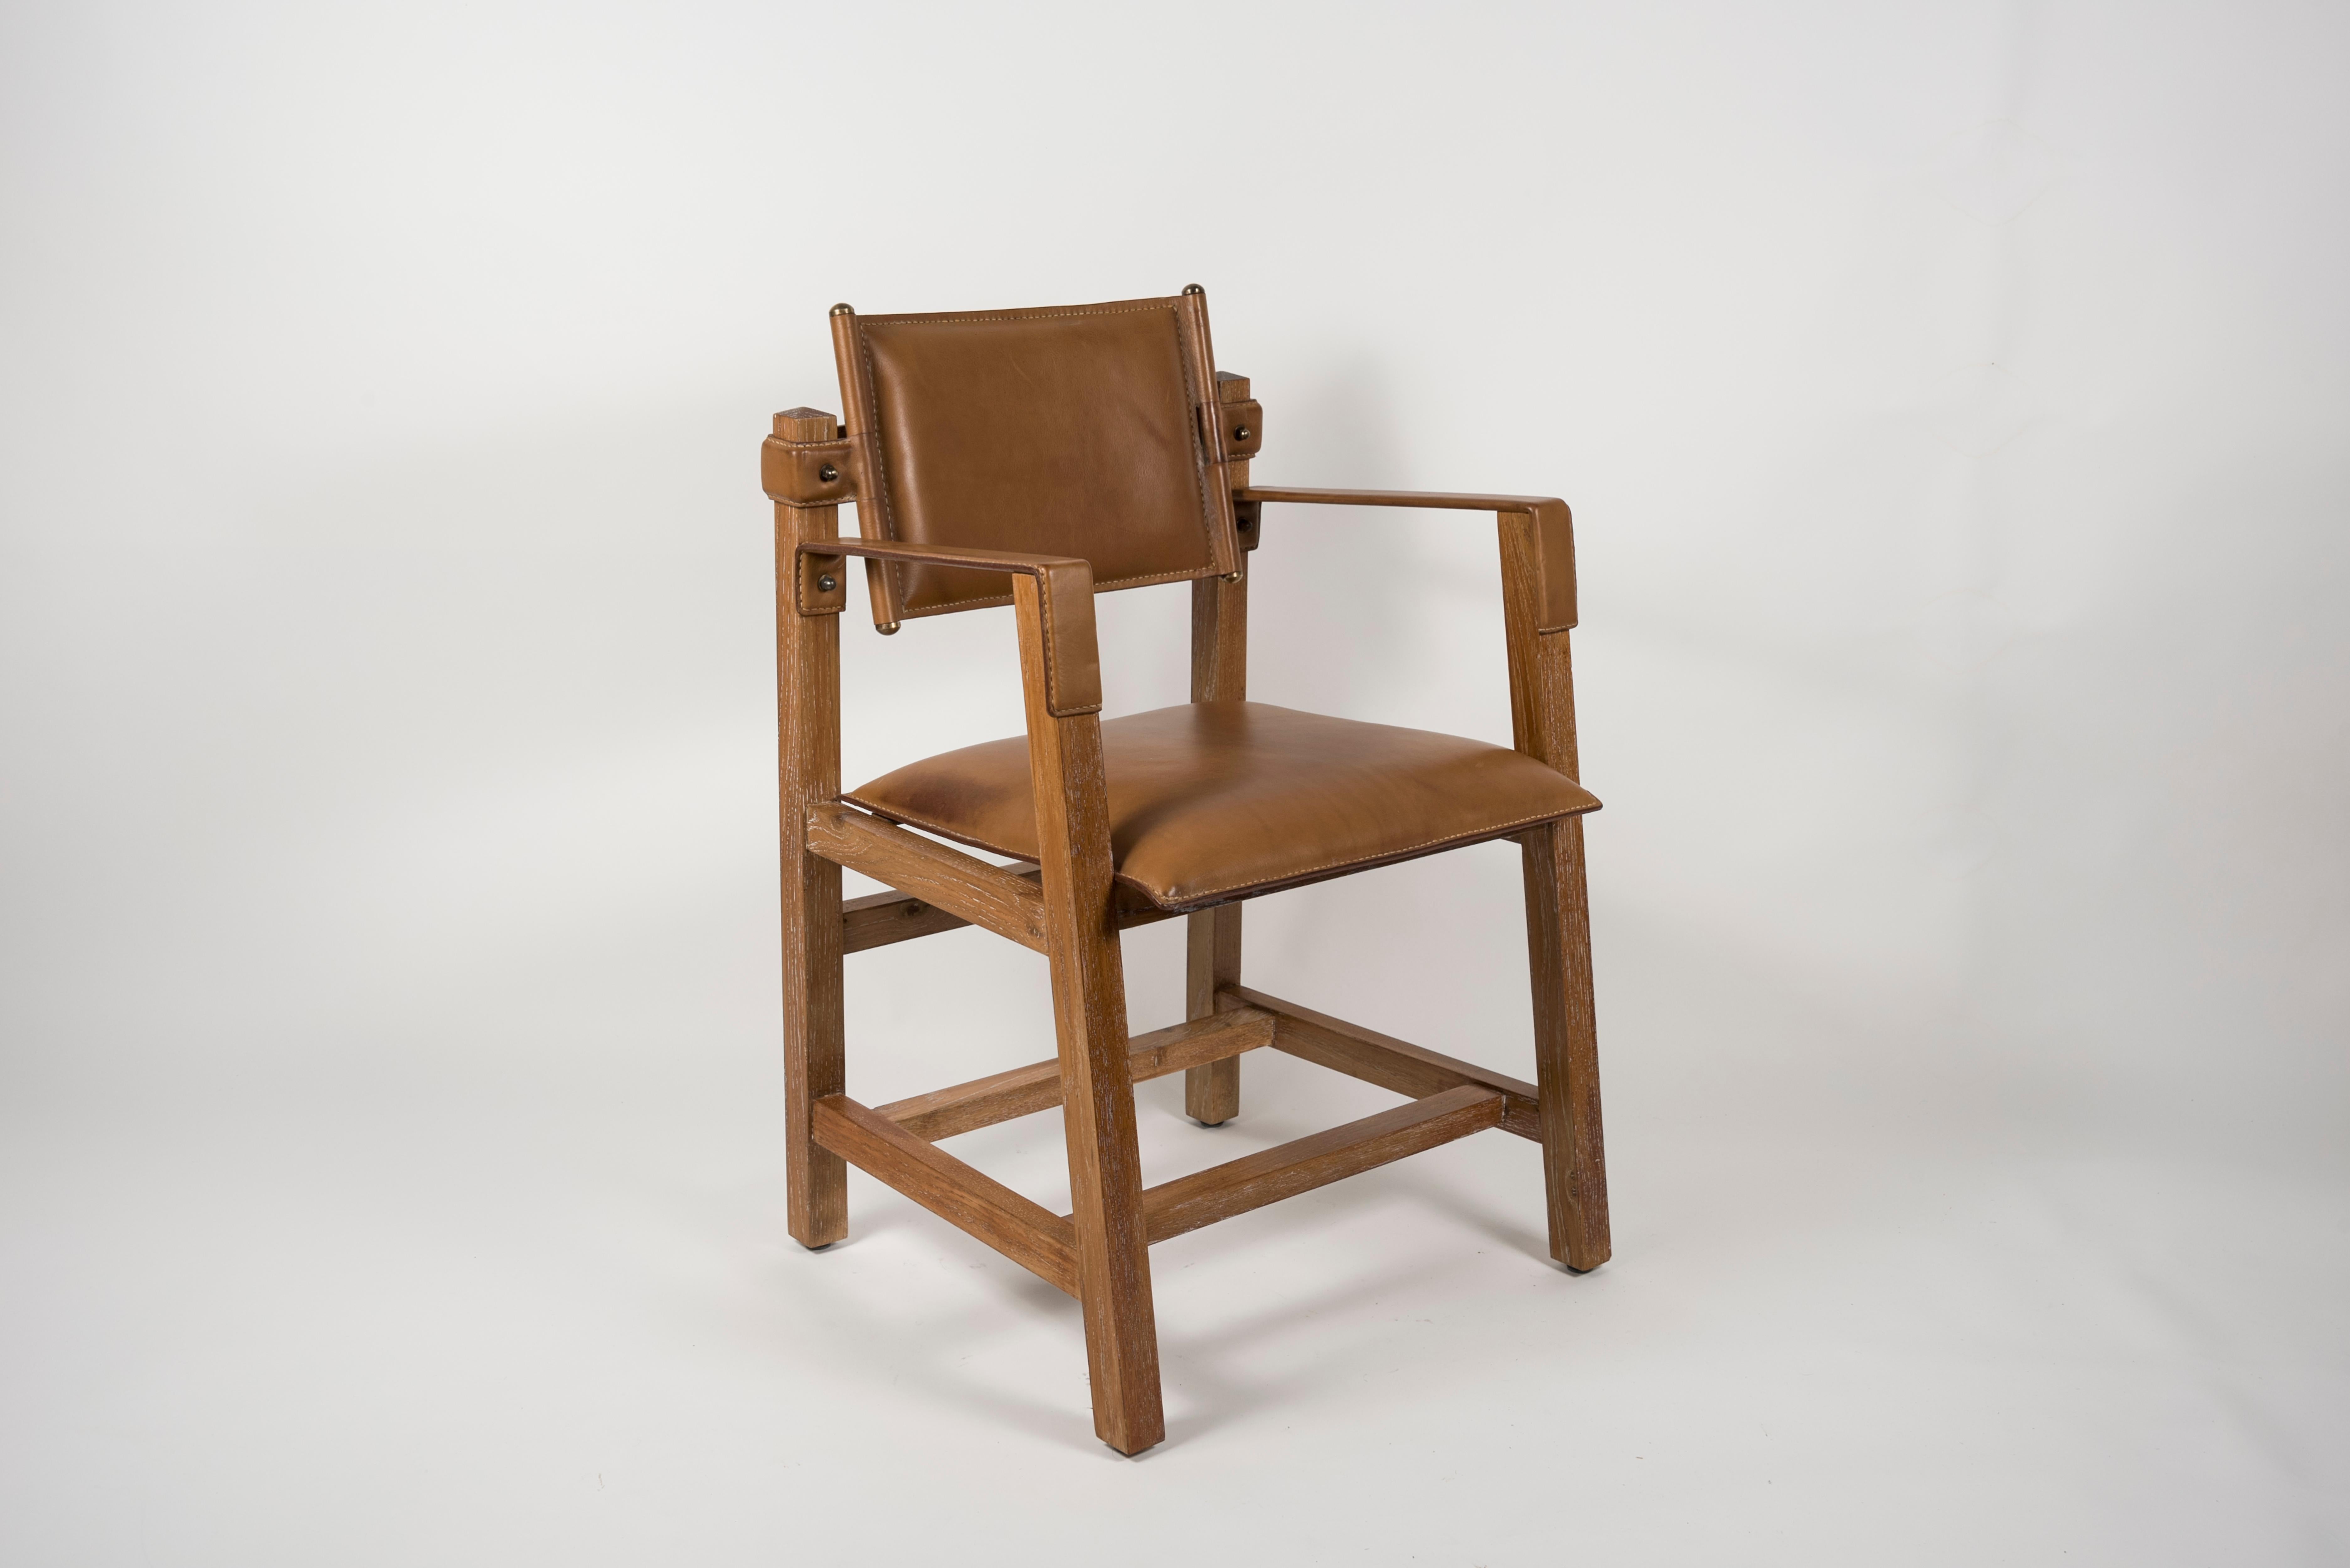 Rare paire de fauteuils en chêne et cuir surpiqué conçue par Jacques Adnet
Peut être vendu par paire
France
1950's.
 